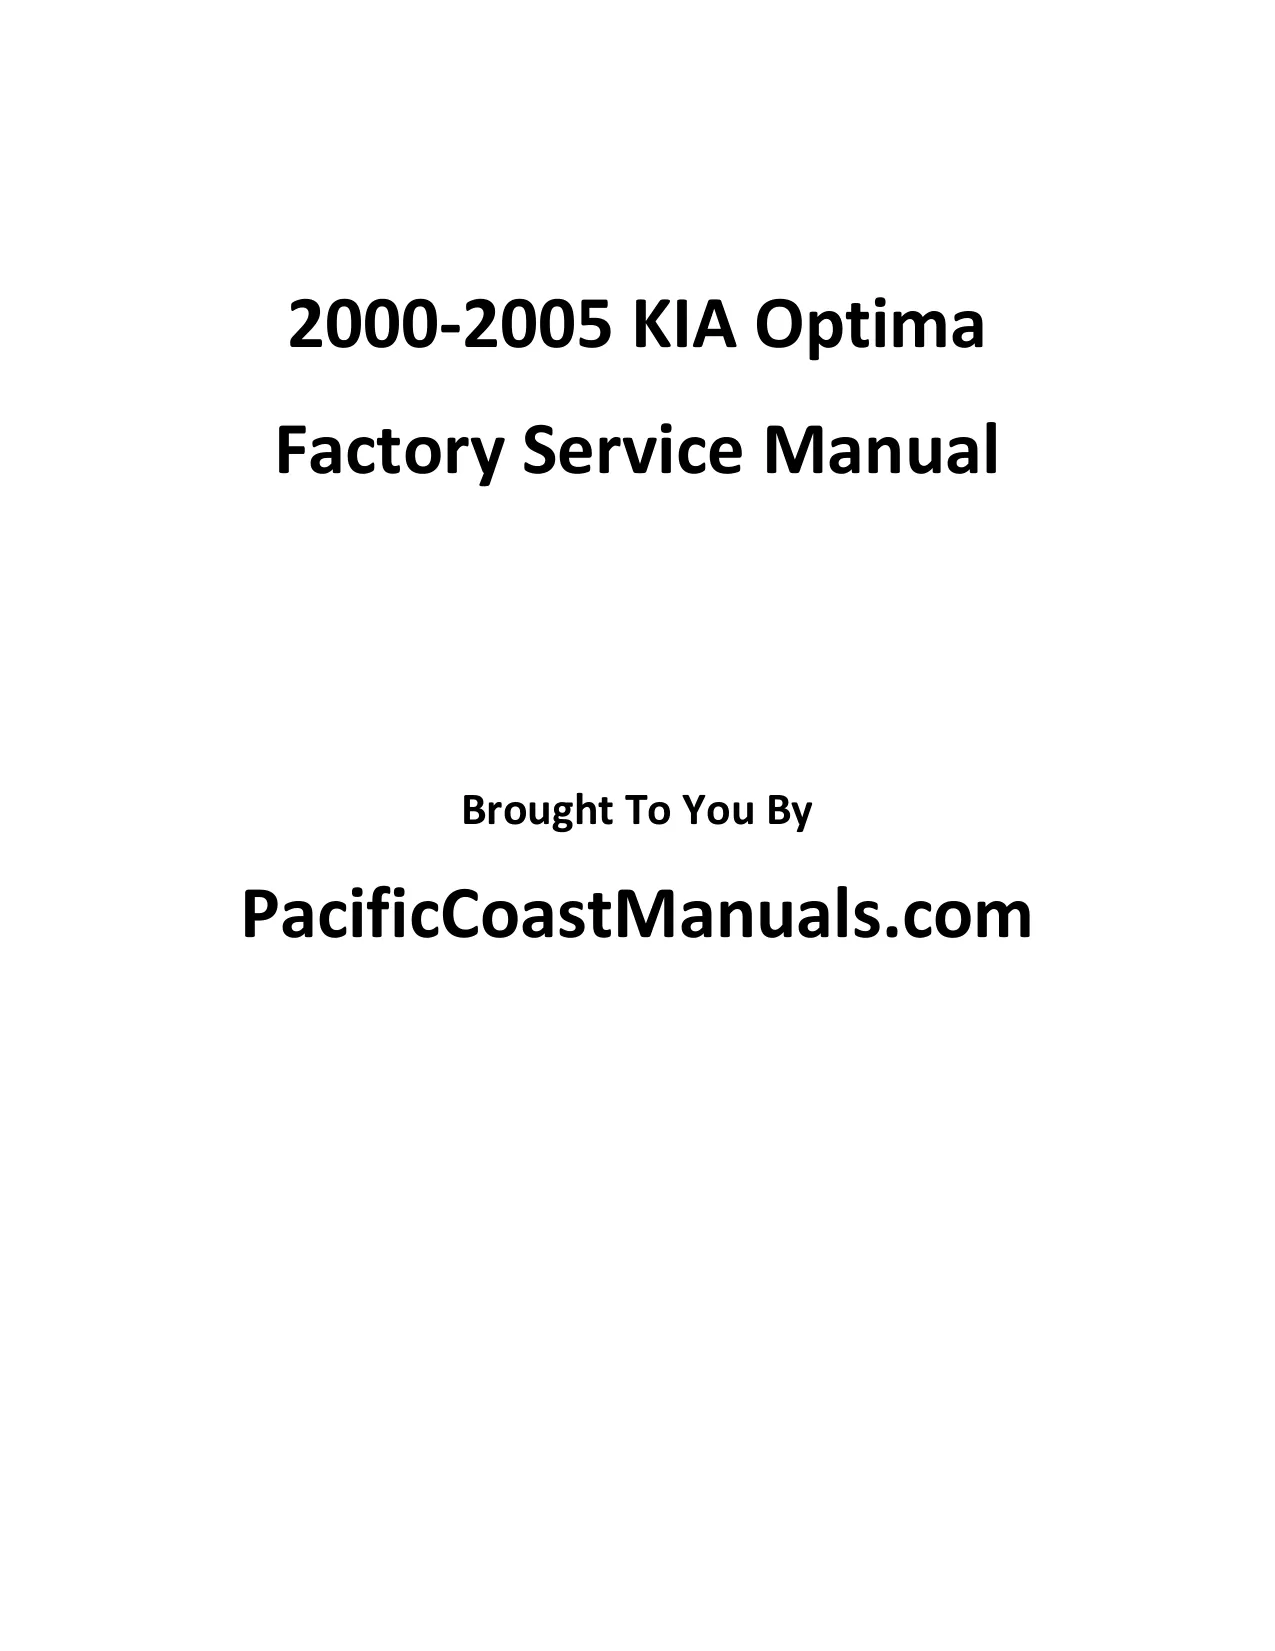 2000-2005 Kia Optima shop manual